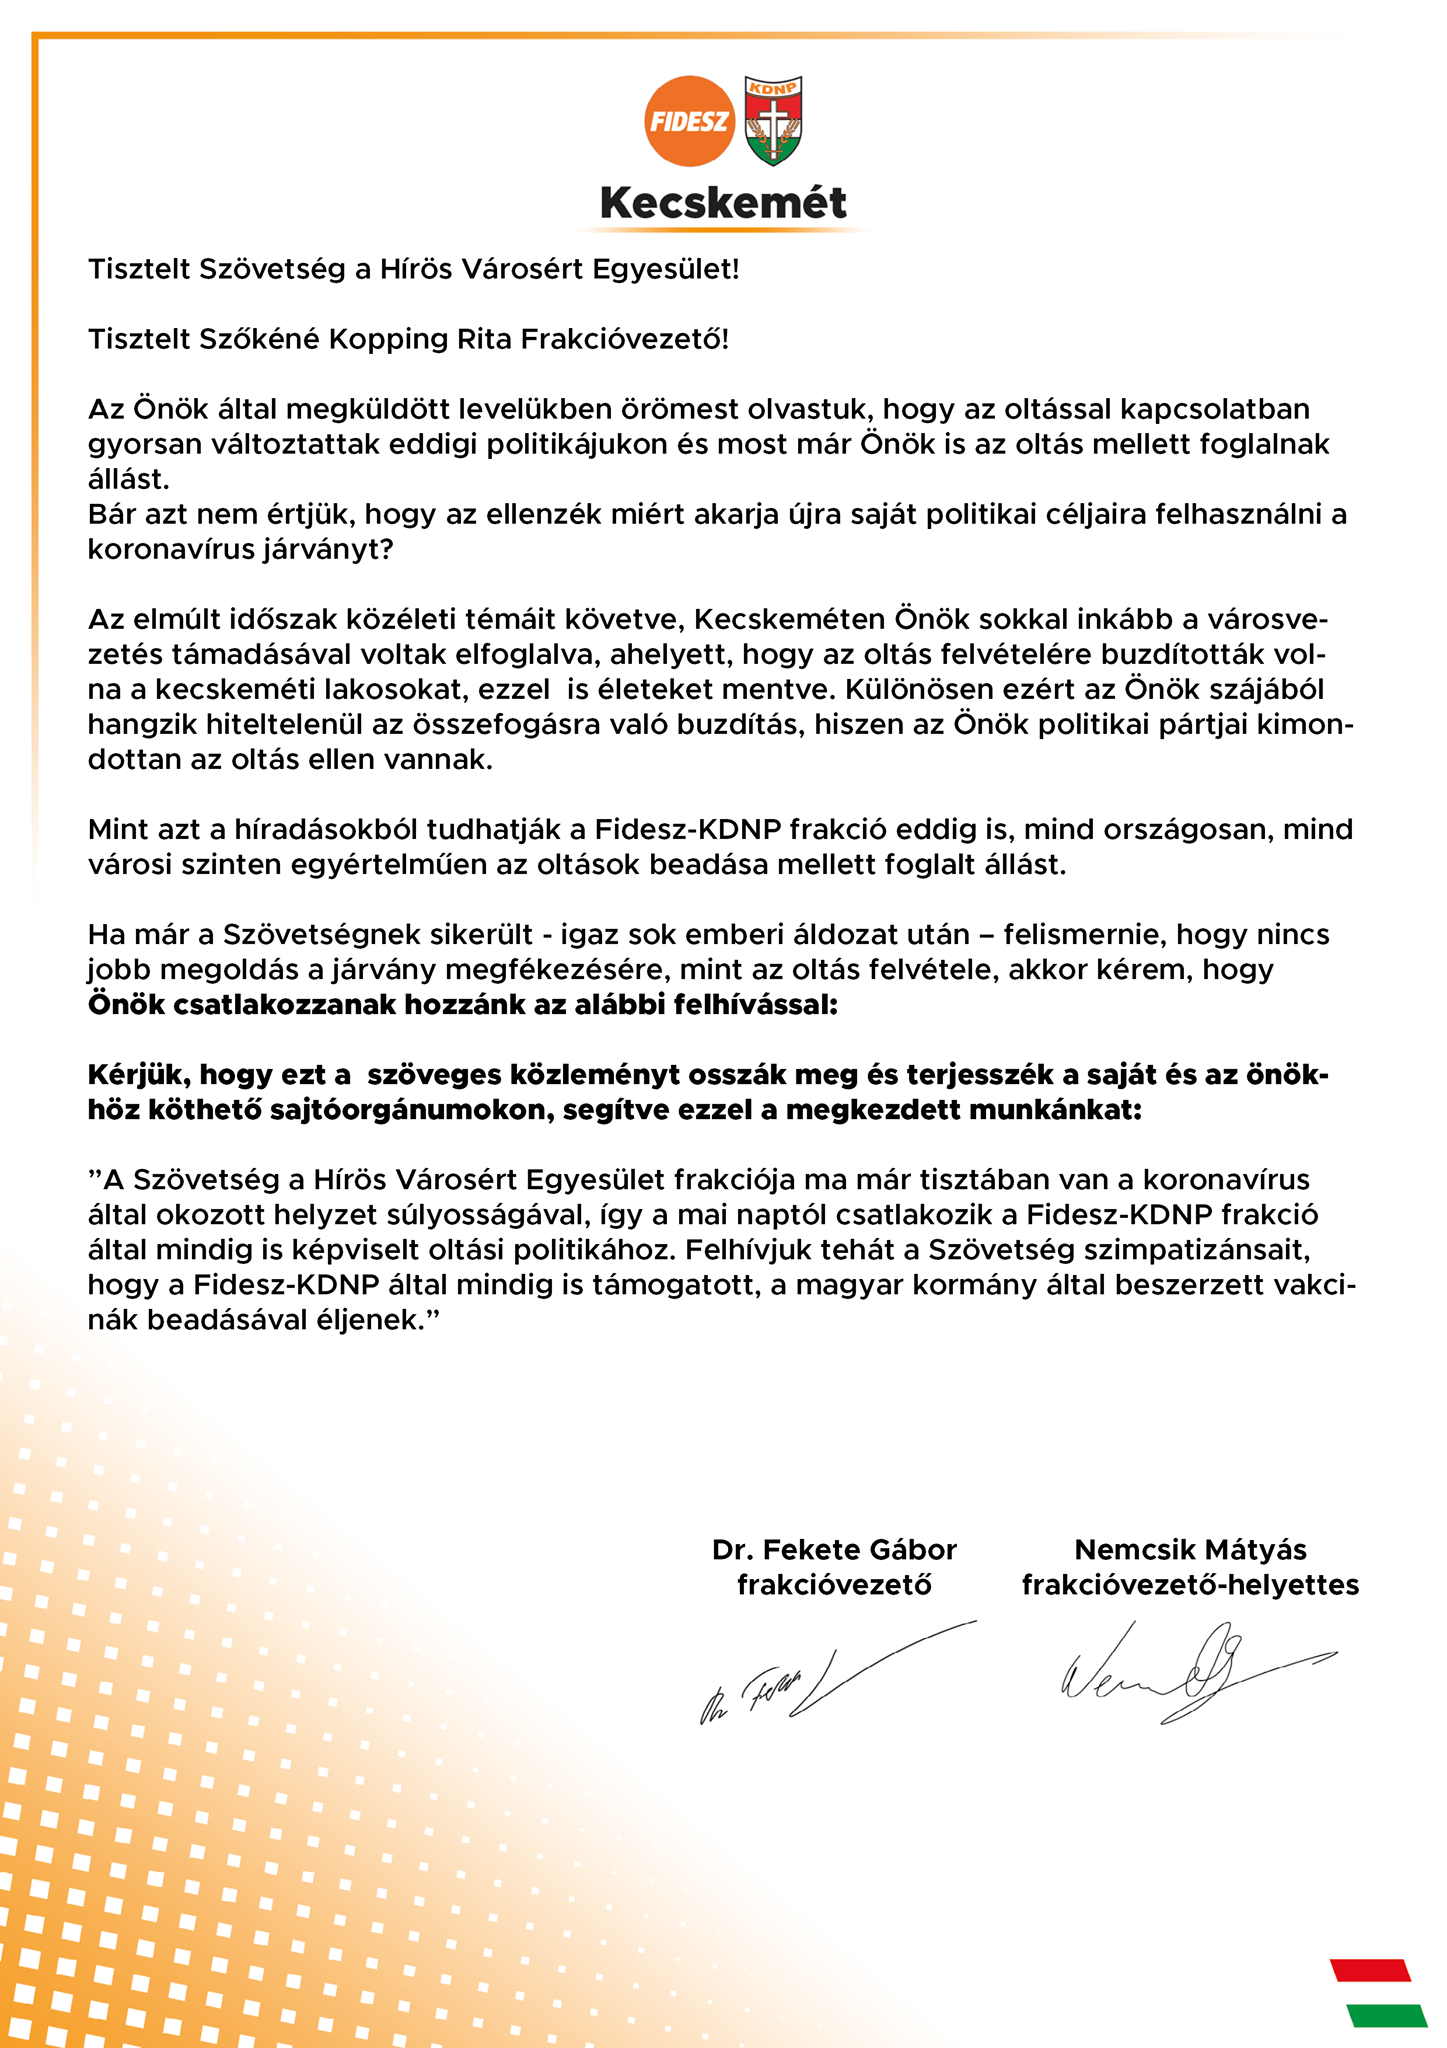 A kecskeméti Fidesz-KDNP frakció nyilatkozata